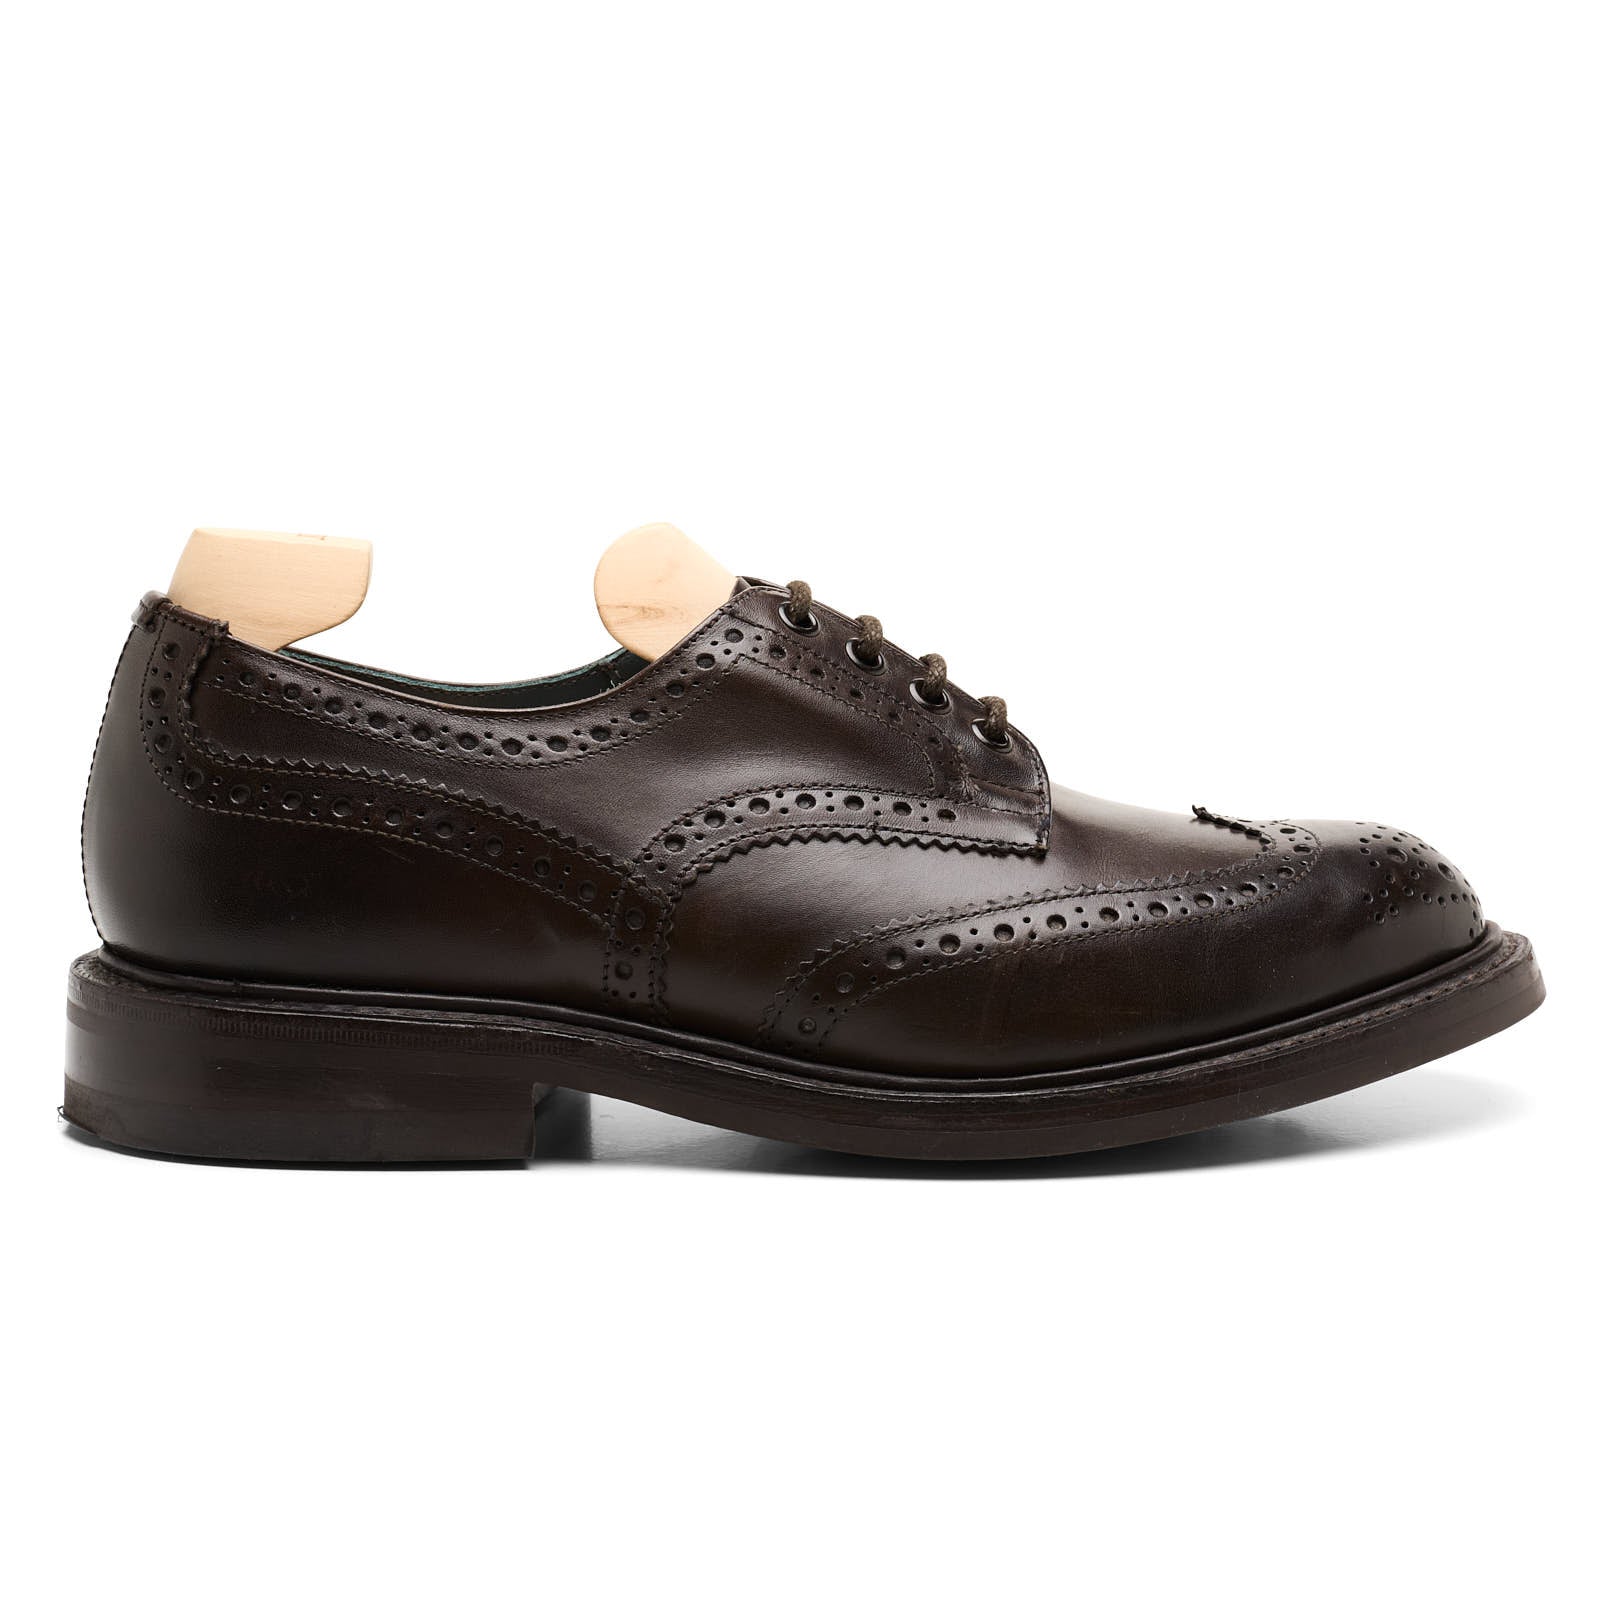 TRICKER'S Bourton Dark Brown Brogue Wingtip Derby Shoes Dainite Sole UK 8 US 9 NEW